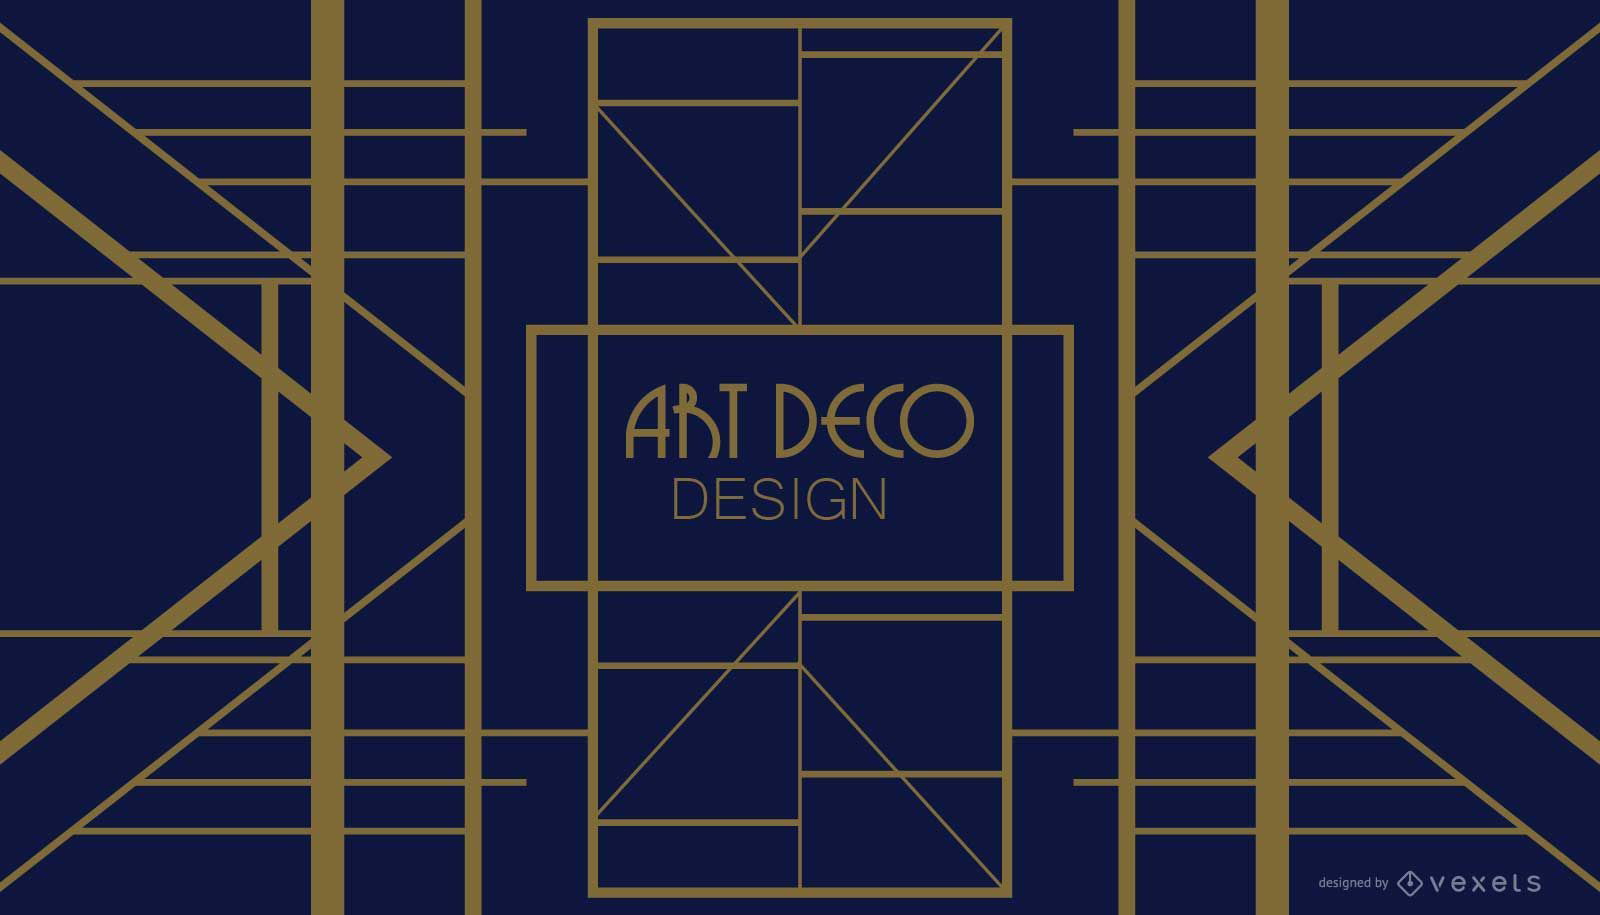 Design Art Deco geom?trico azul e dourado